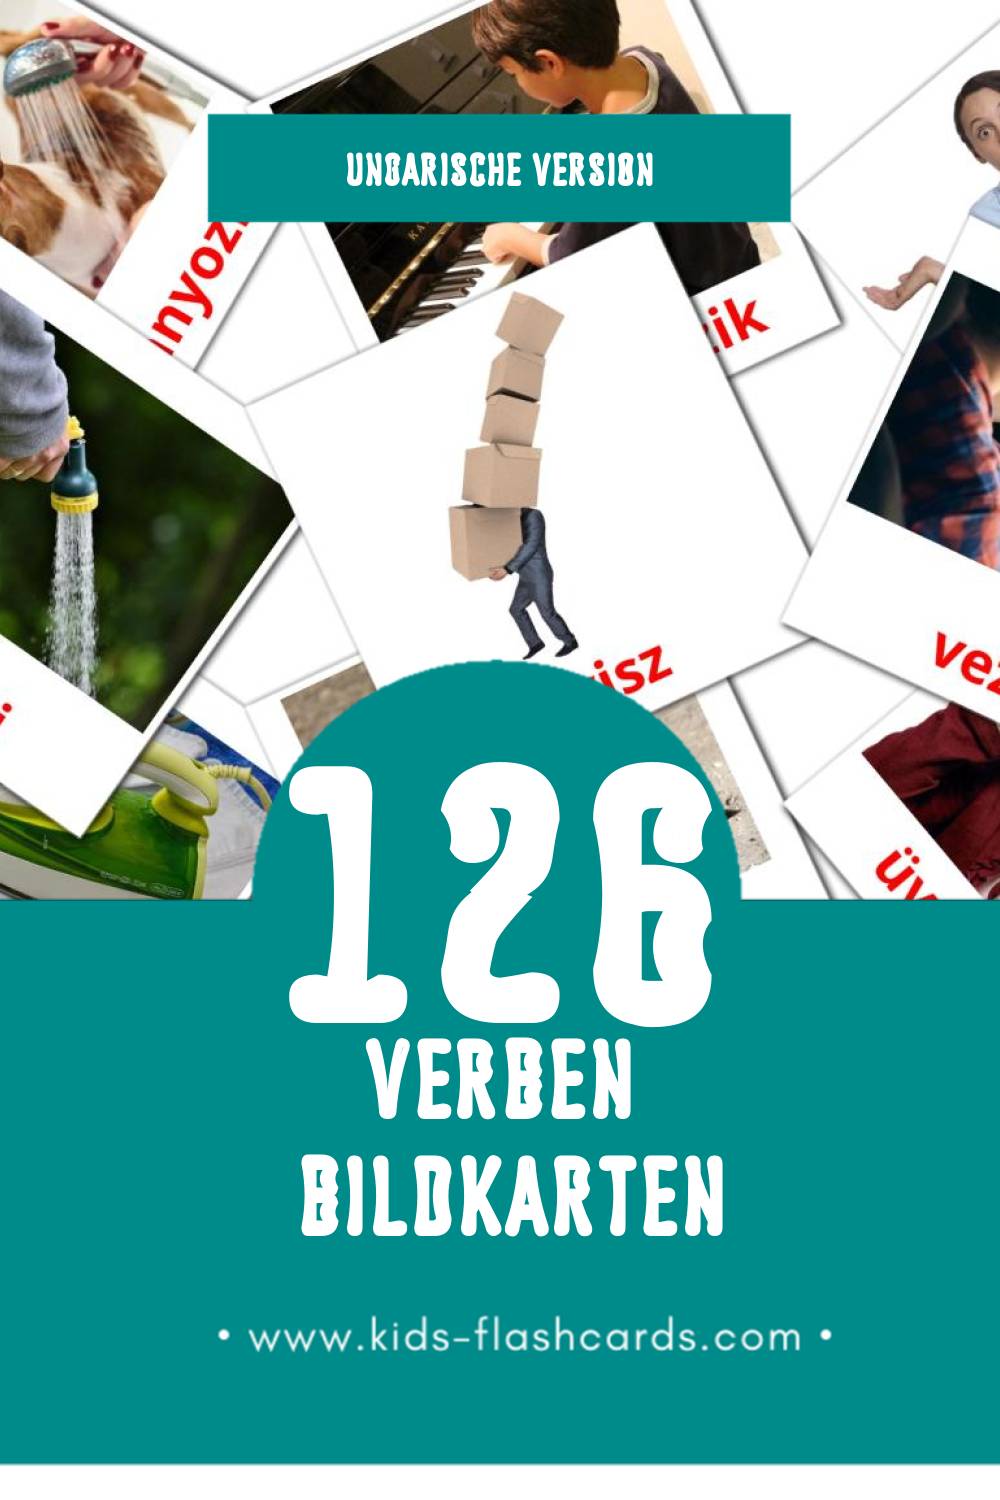 Visual Igék Flashcards für Kleinkinder (126 Karten in Ungarisch)